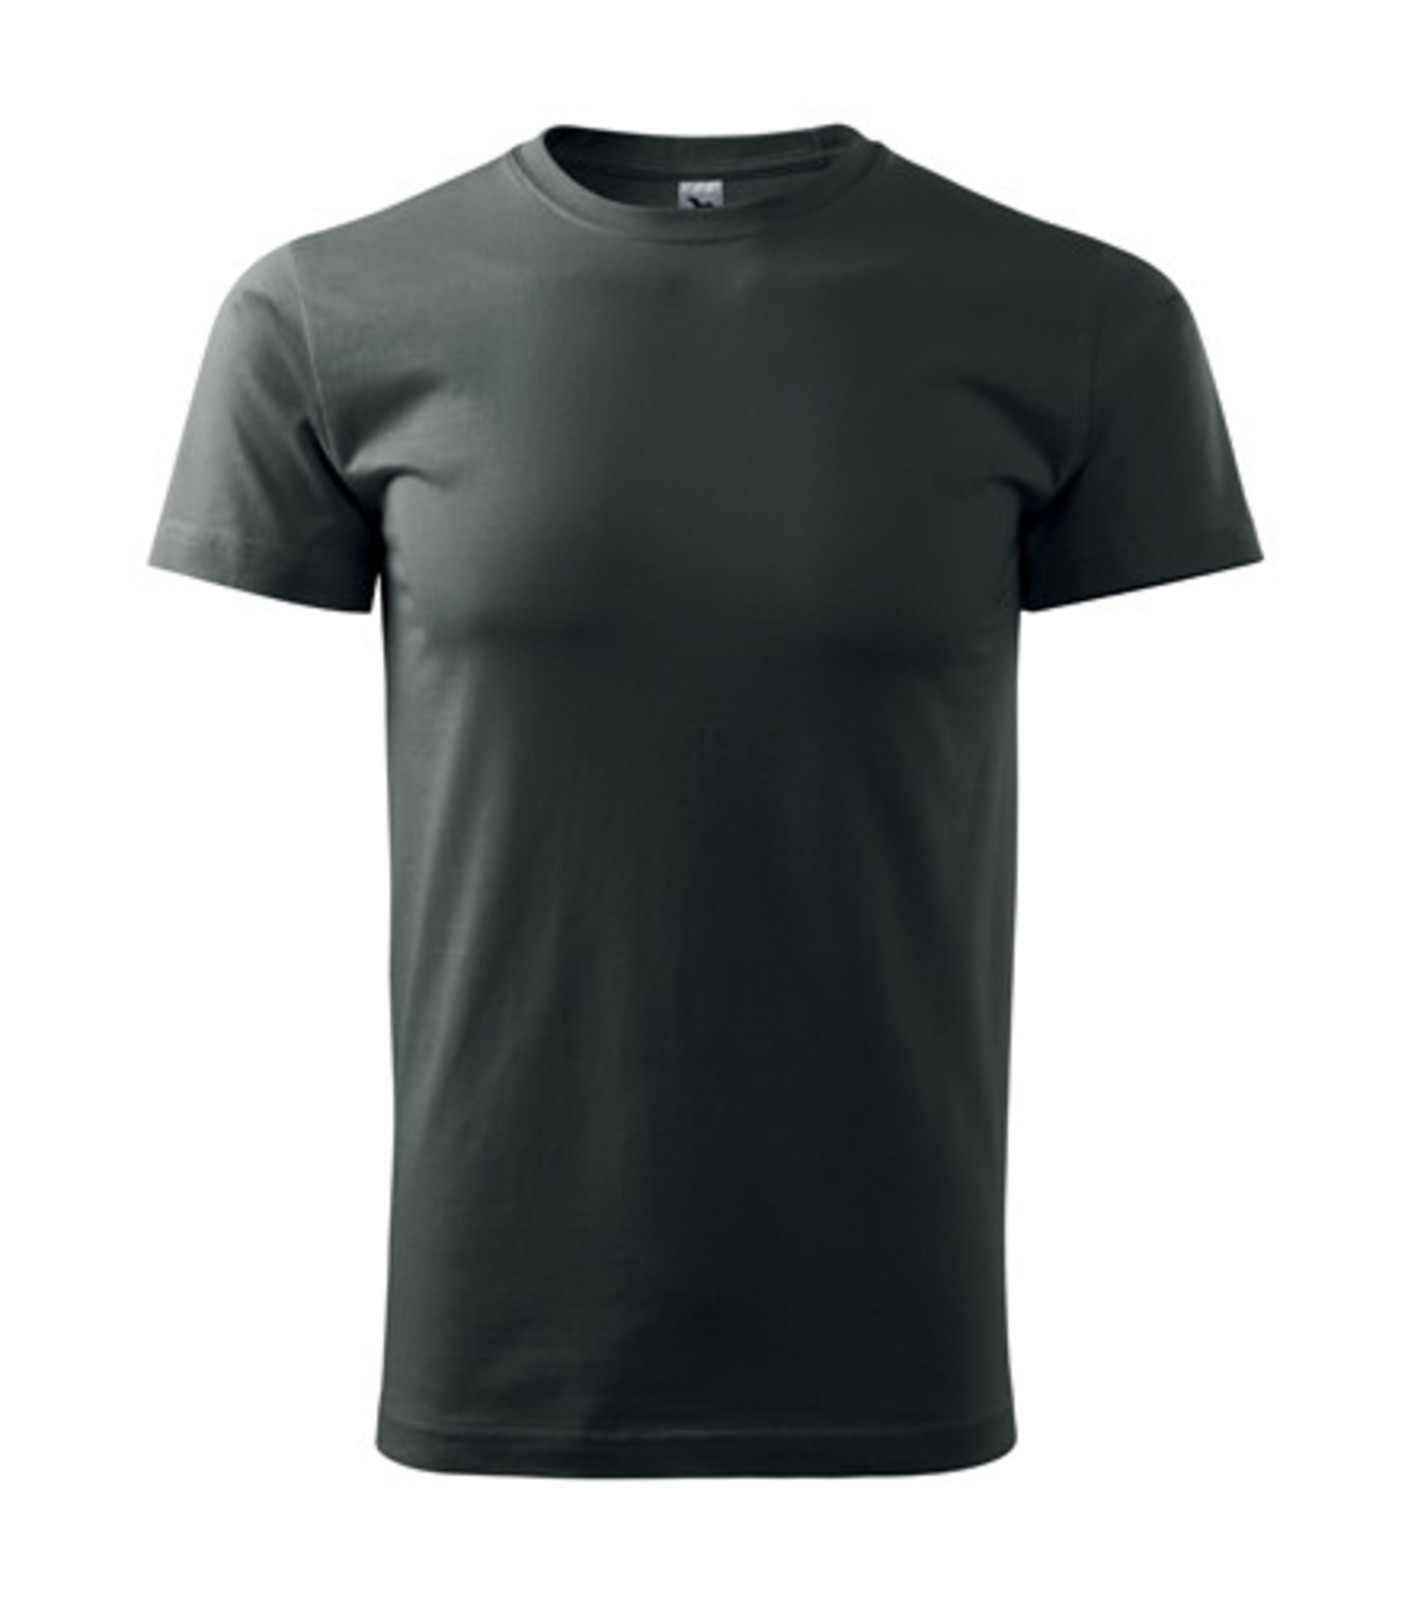 Unisex tričko Malfini Heavy New 137 - veľkosť: S, farba: tmavá bridlica